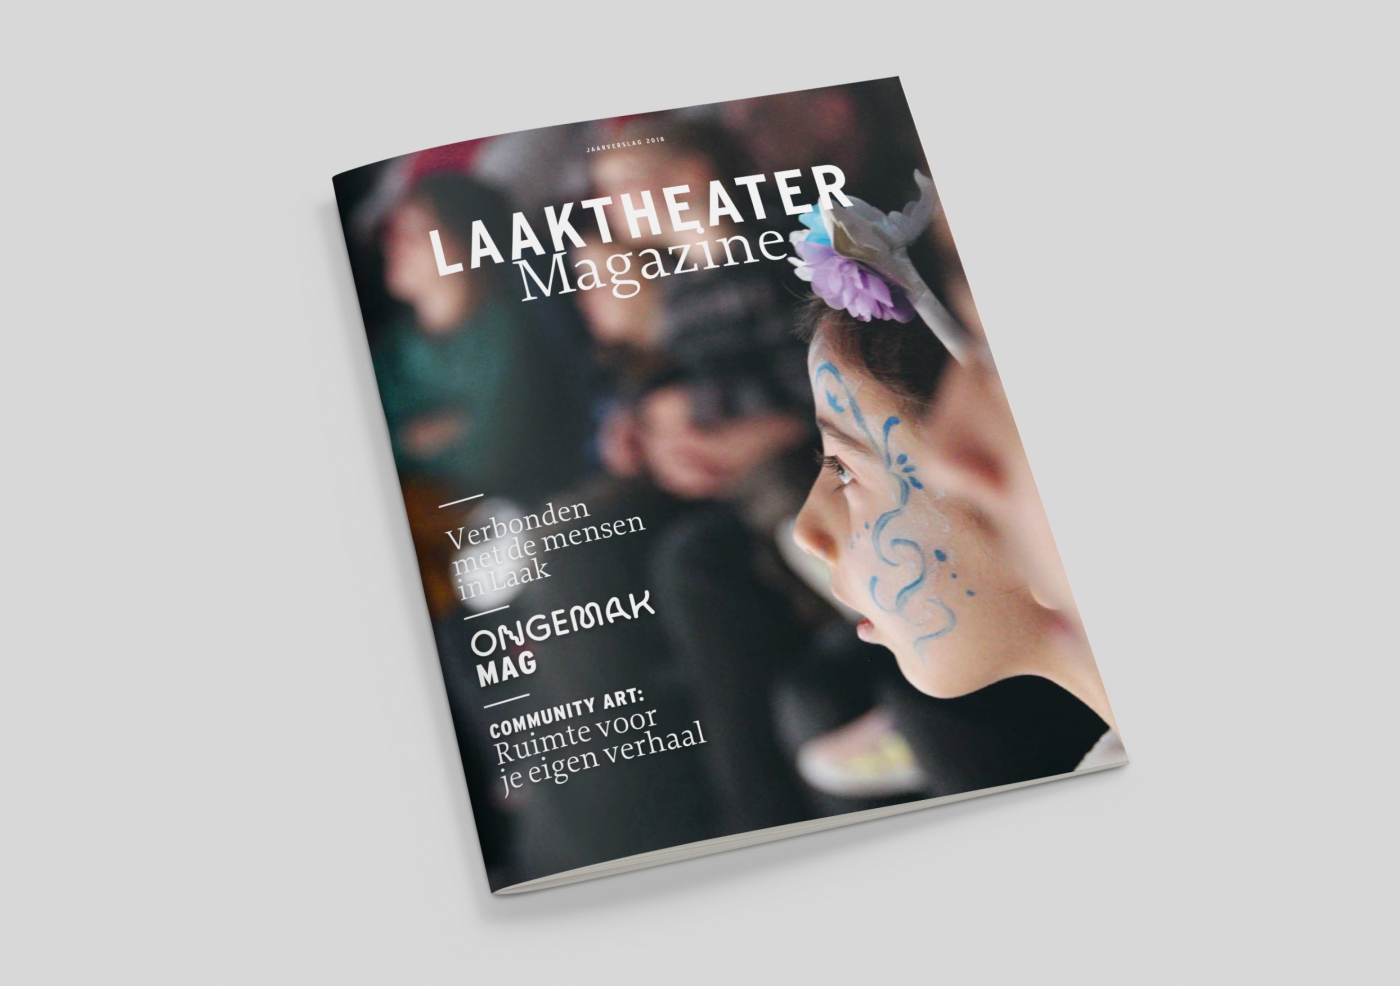 Laaktheater magazine